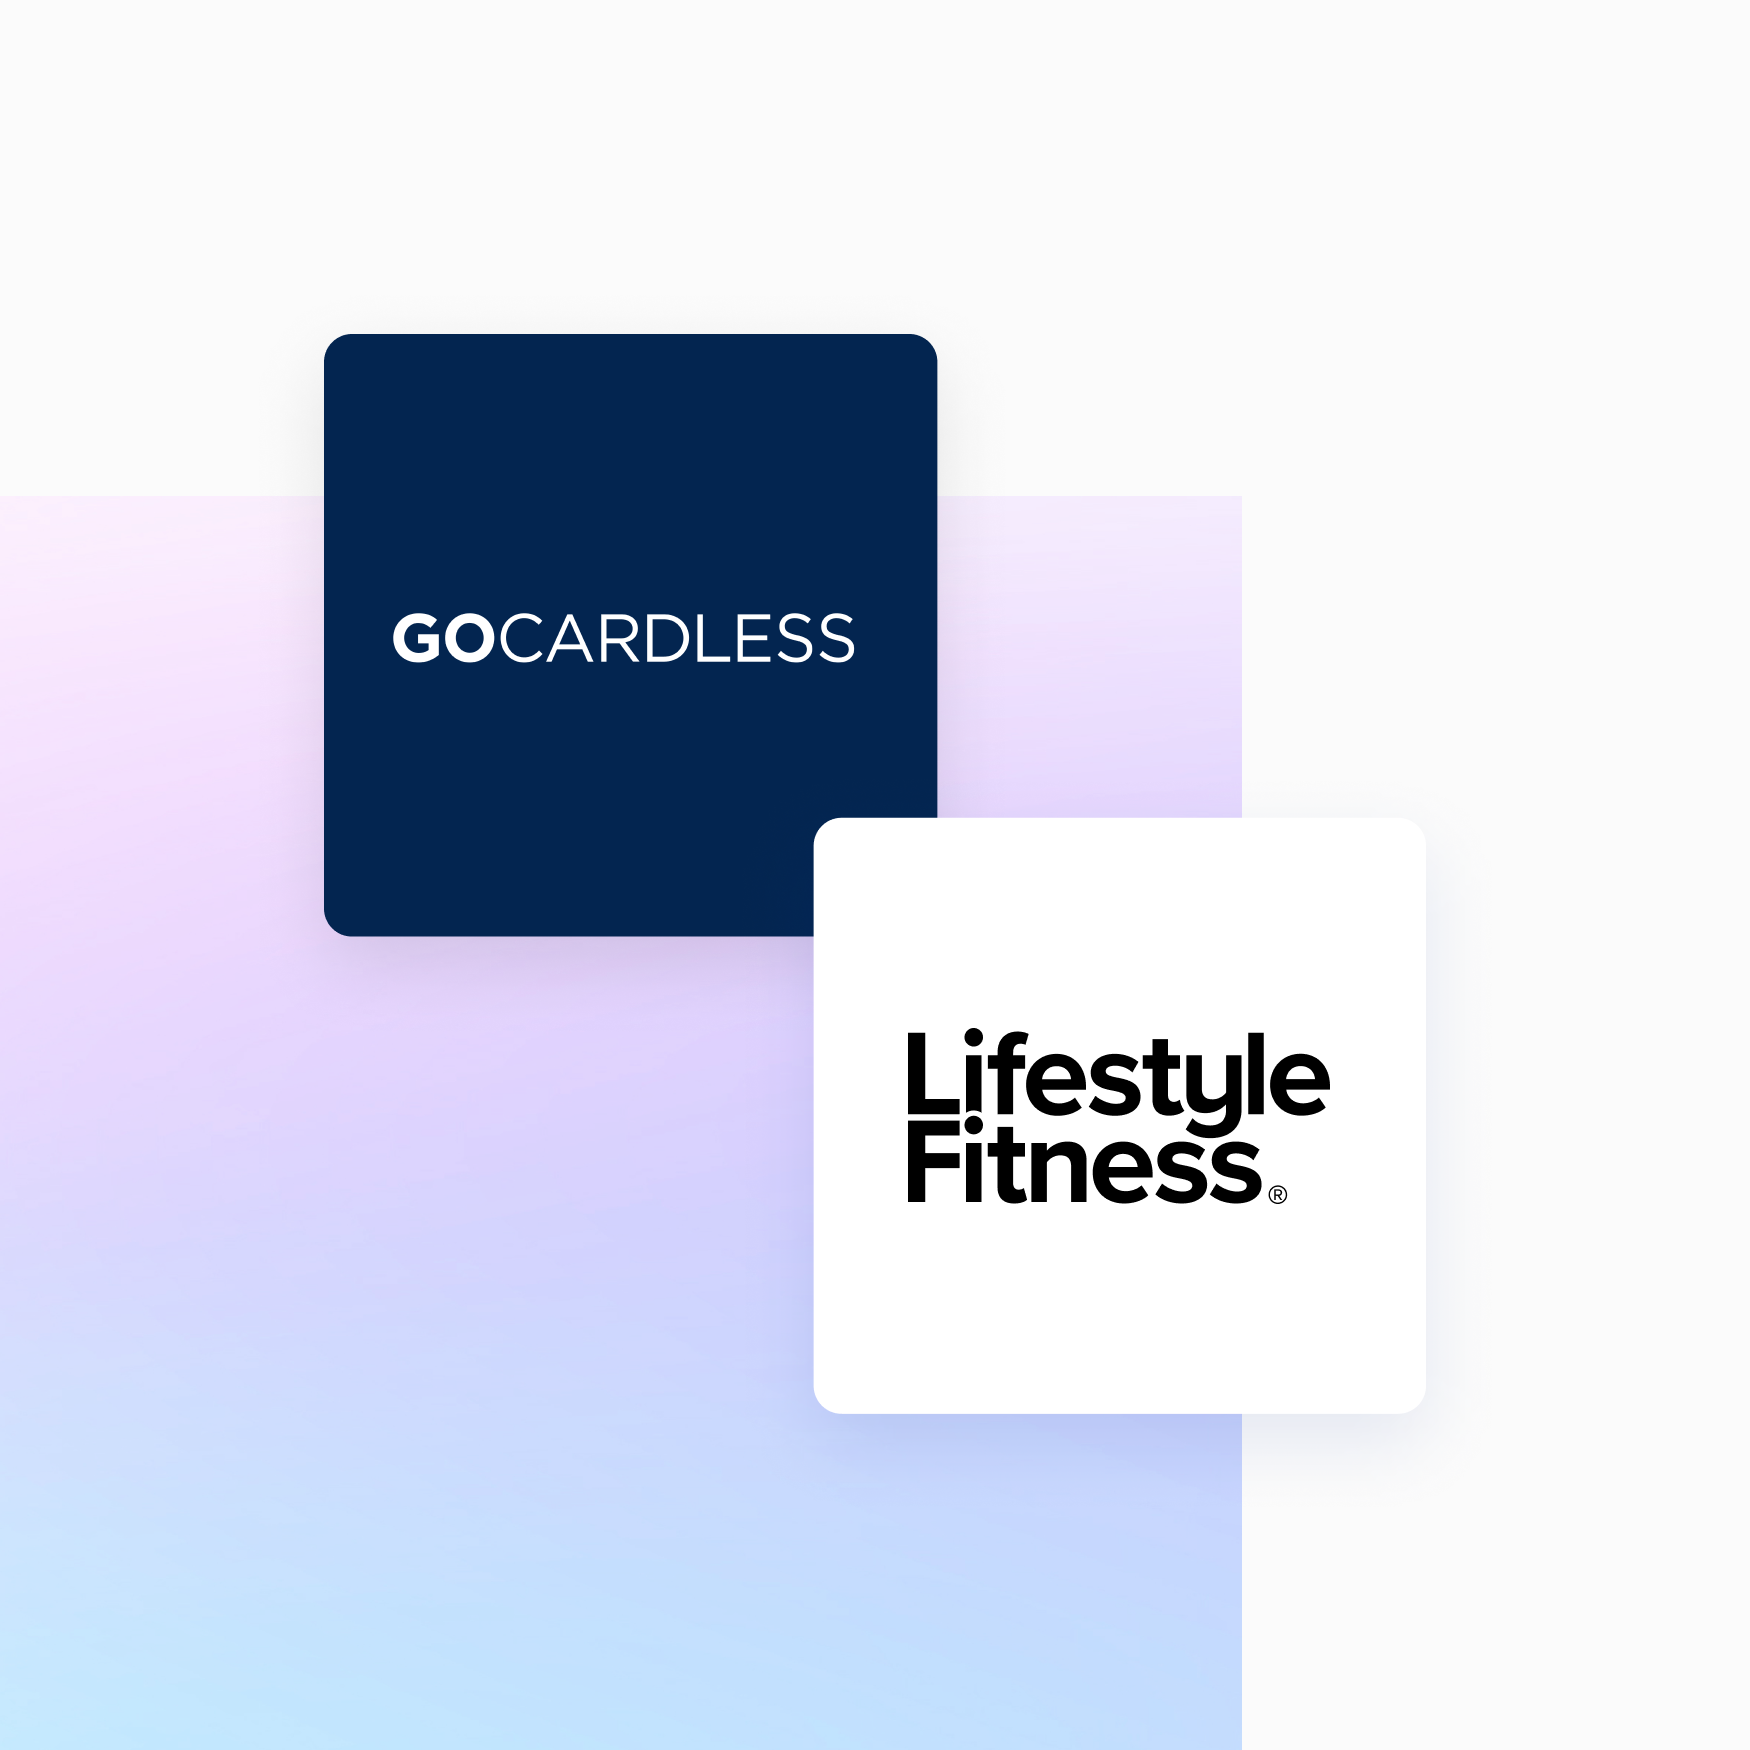 "Varje misslyckad betalning kan bli ett kundtjänstproblem, men Success+ från GoCardless har förändrat den upplevelsen."